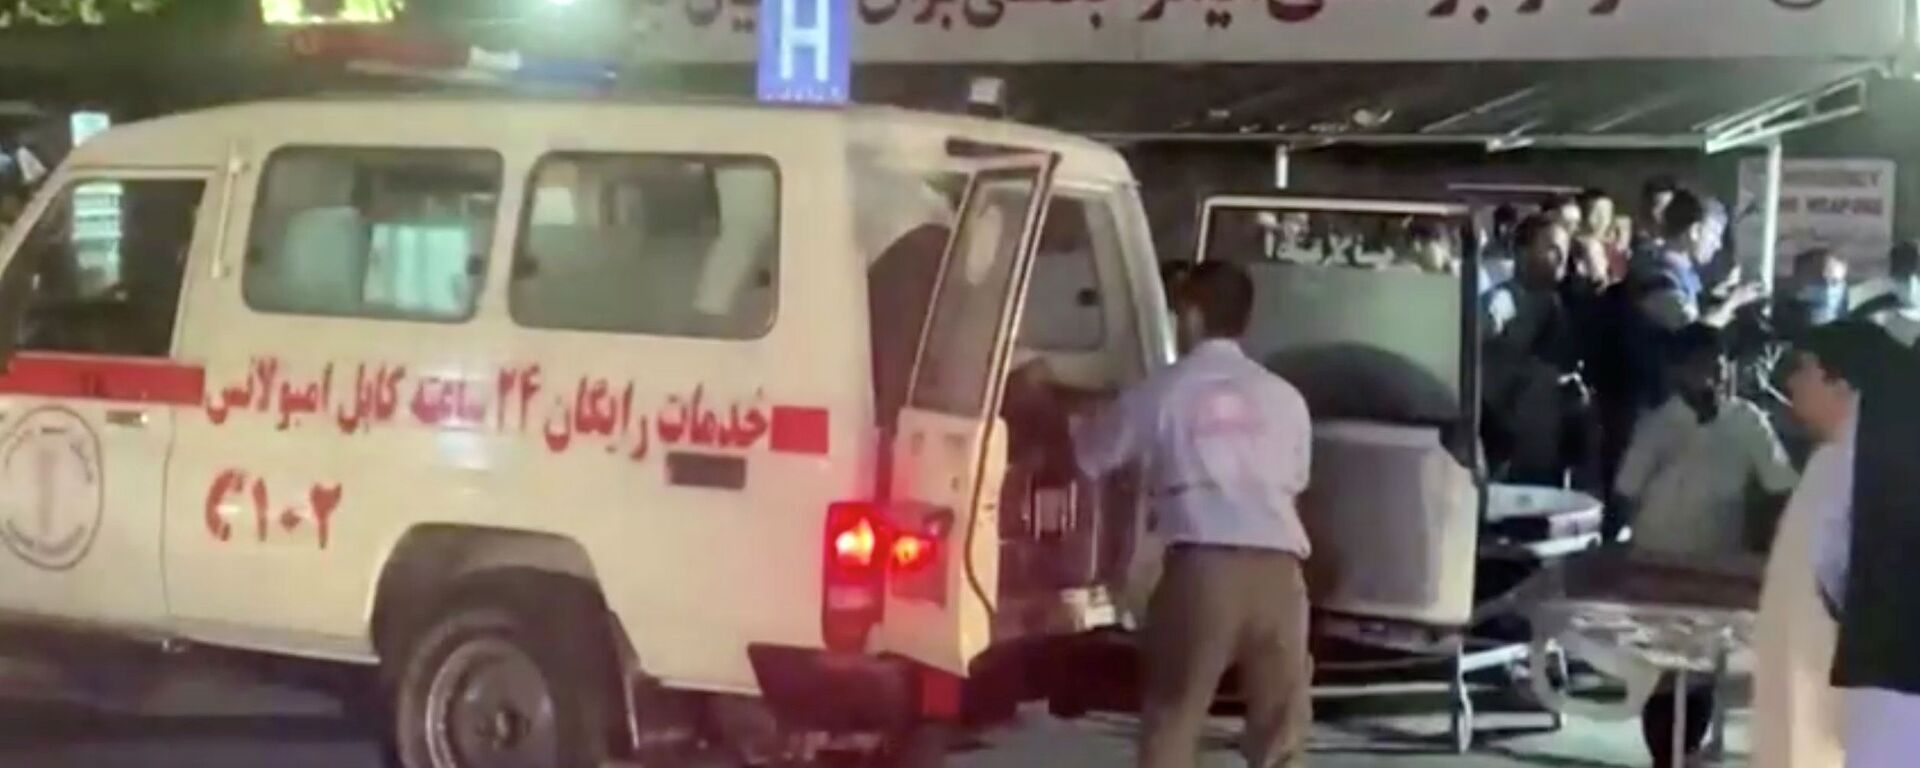 Автомобиль скорой помощи доставляет пострадавших в больницу после нападения в аэропорту Кабула (26 августа 2021). Афганистан - Sputnik Արմենիա, 1920, 27.08.2021